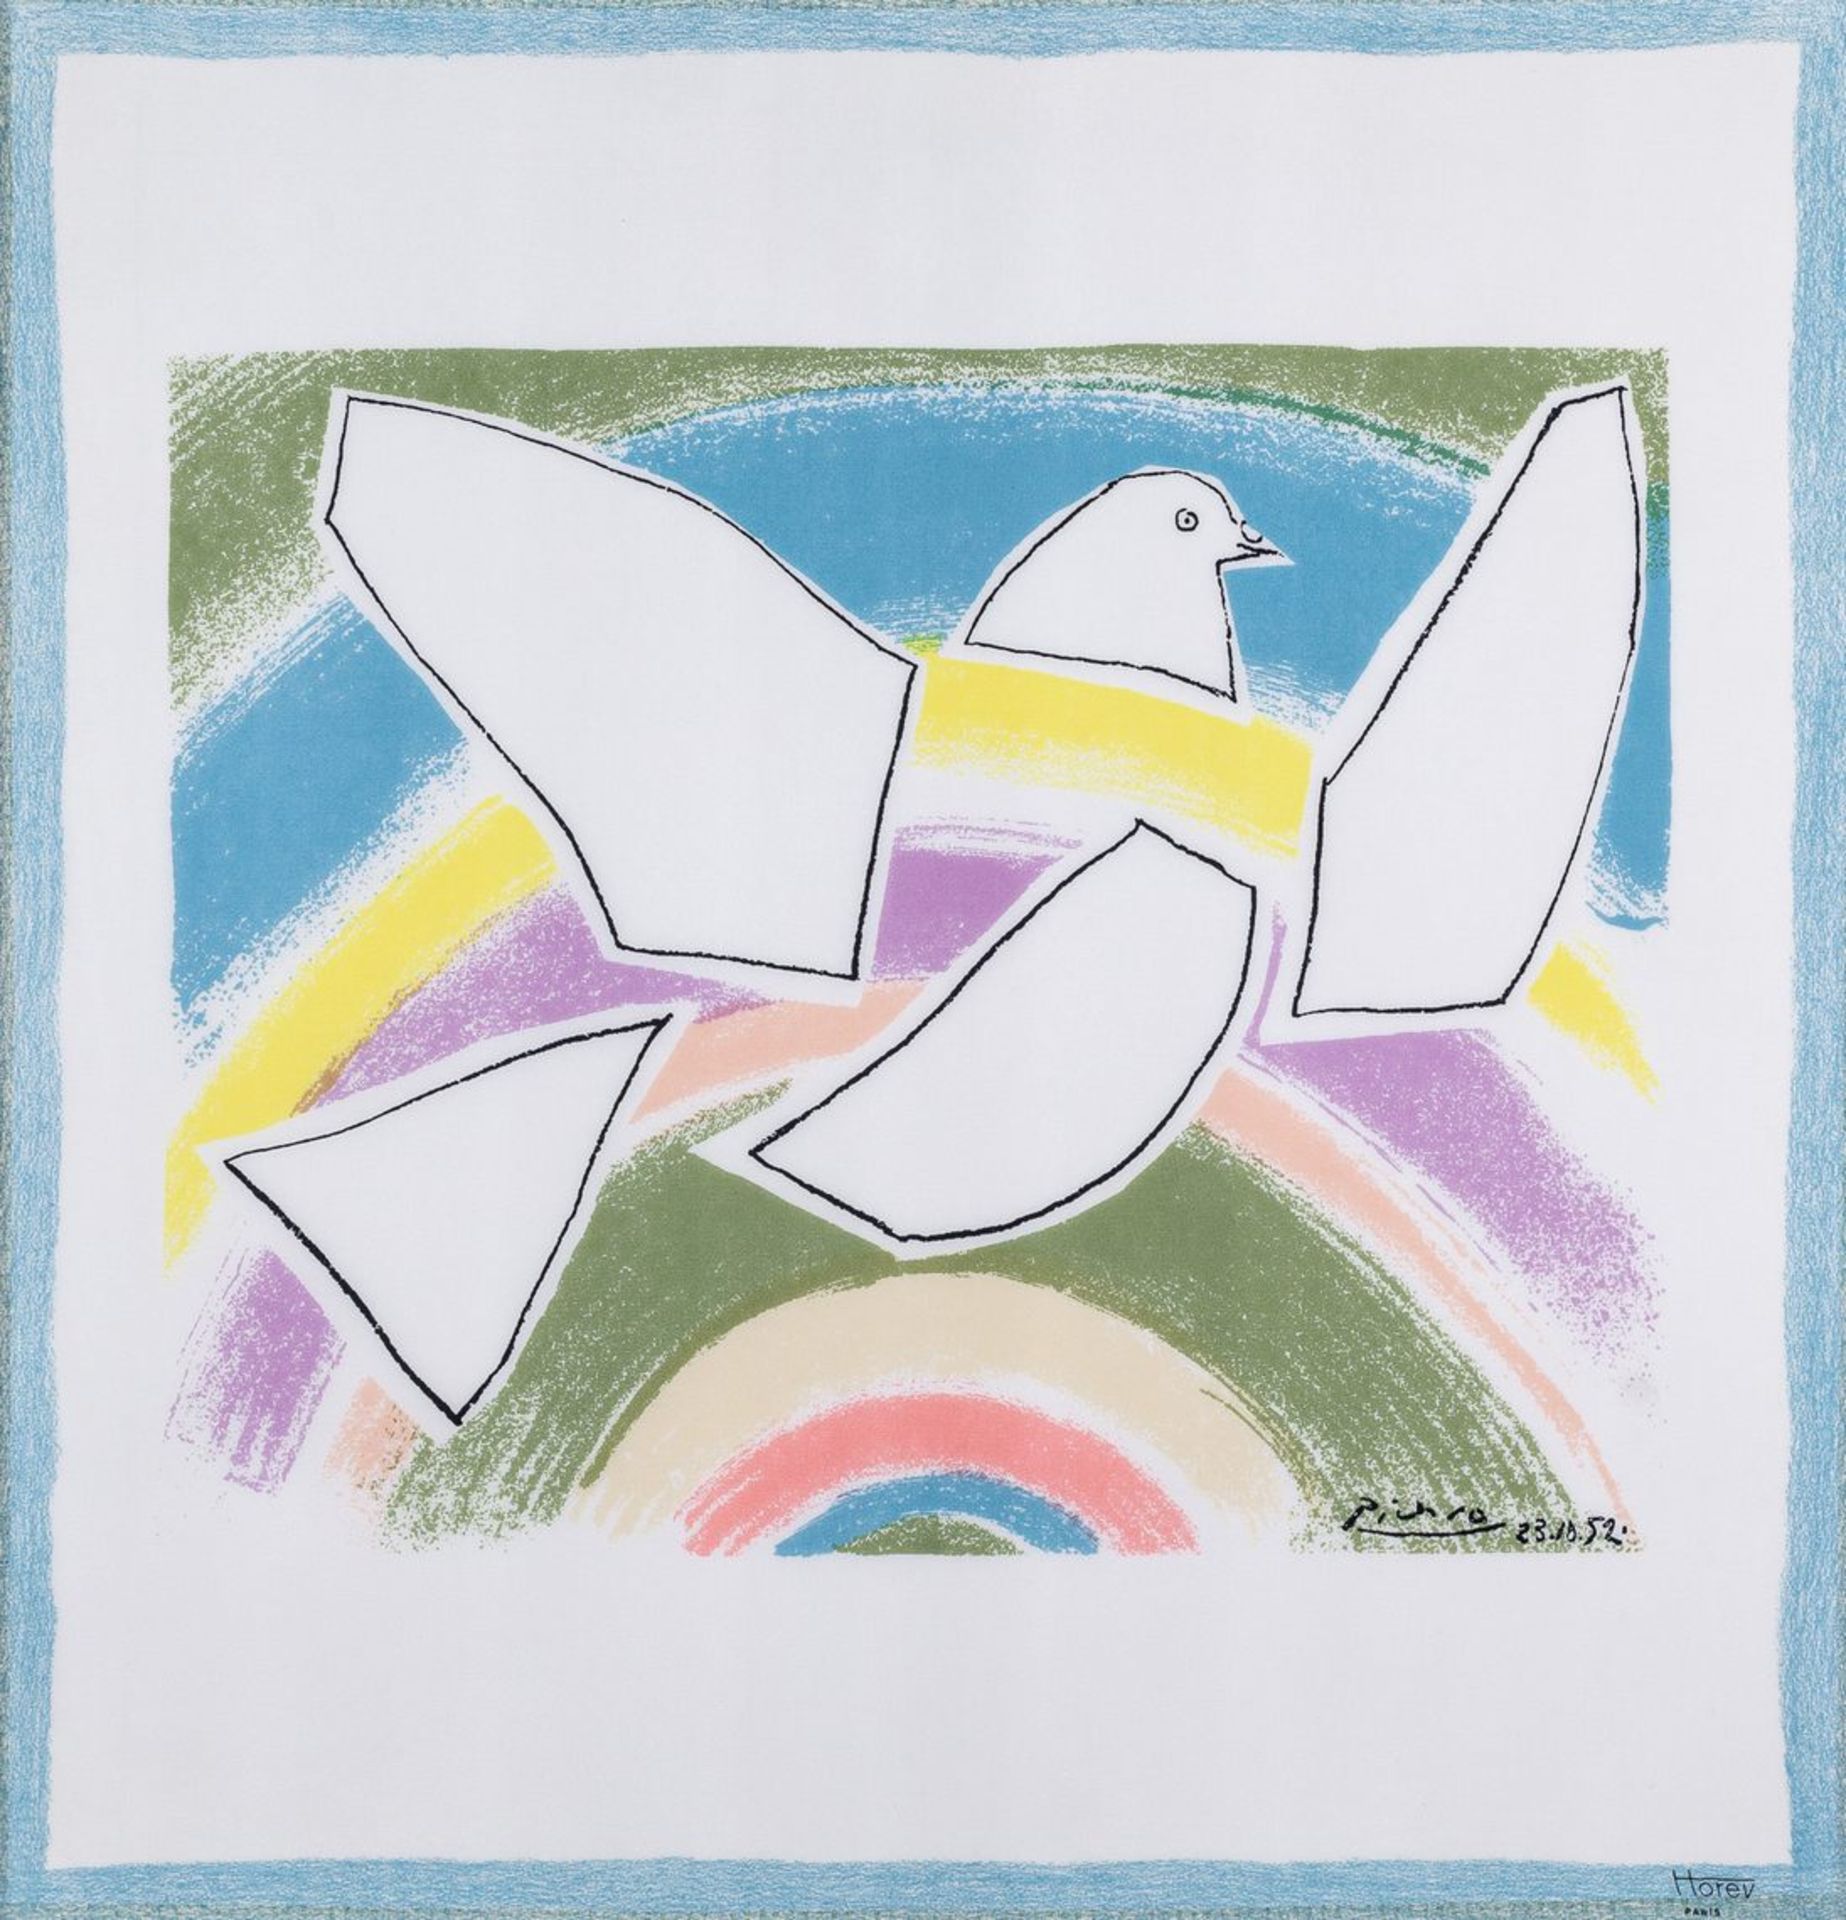 Picasso, Pablo1881 Malaga - 1973 Mougins. Seidenschal, aufgez. Fliegende Taube im Regenbogen. U.r.